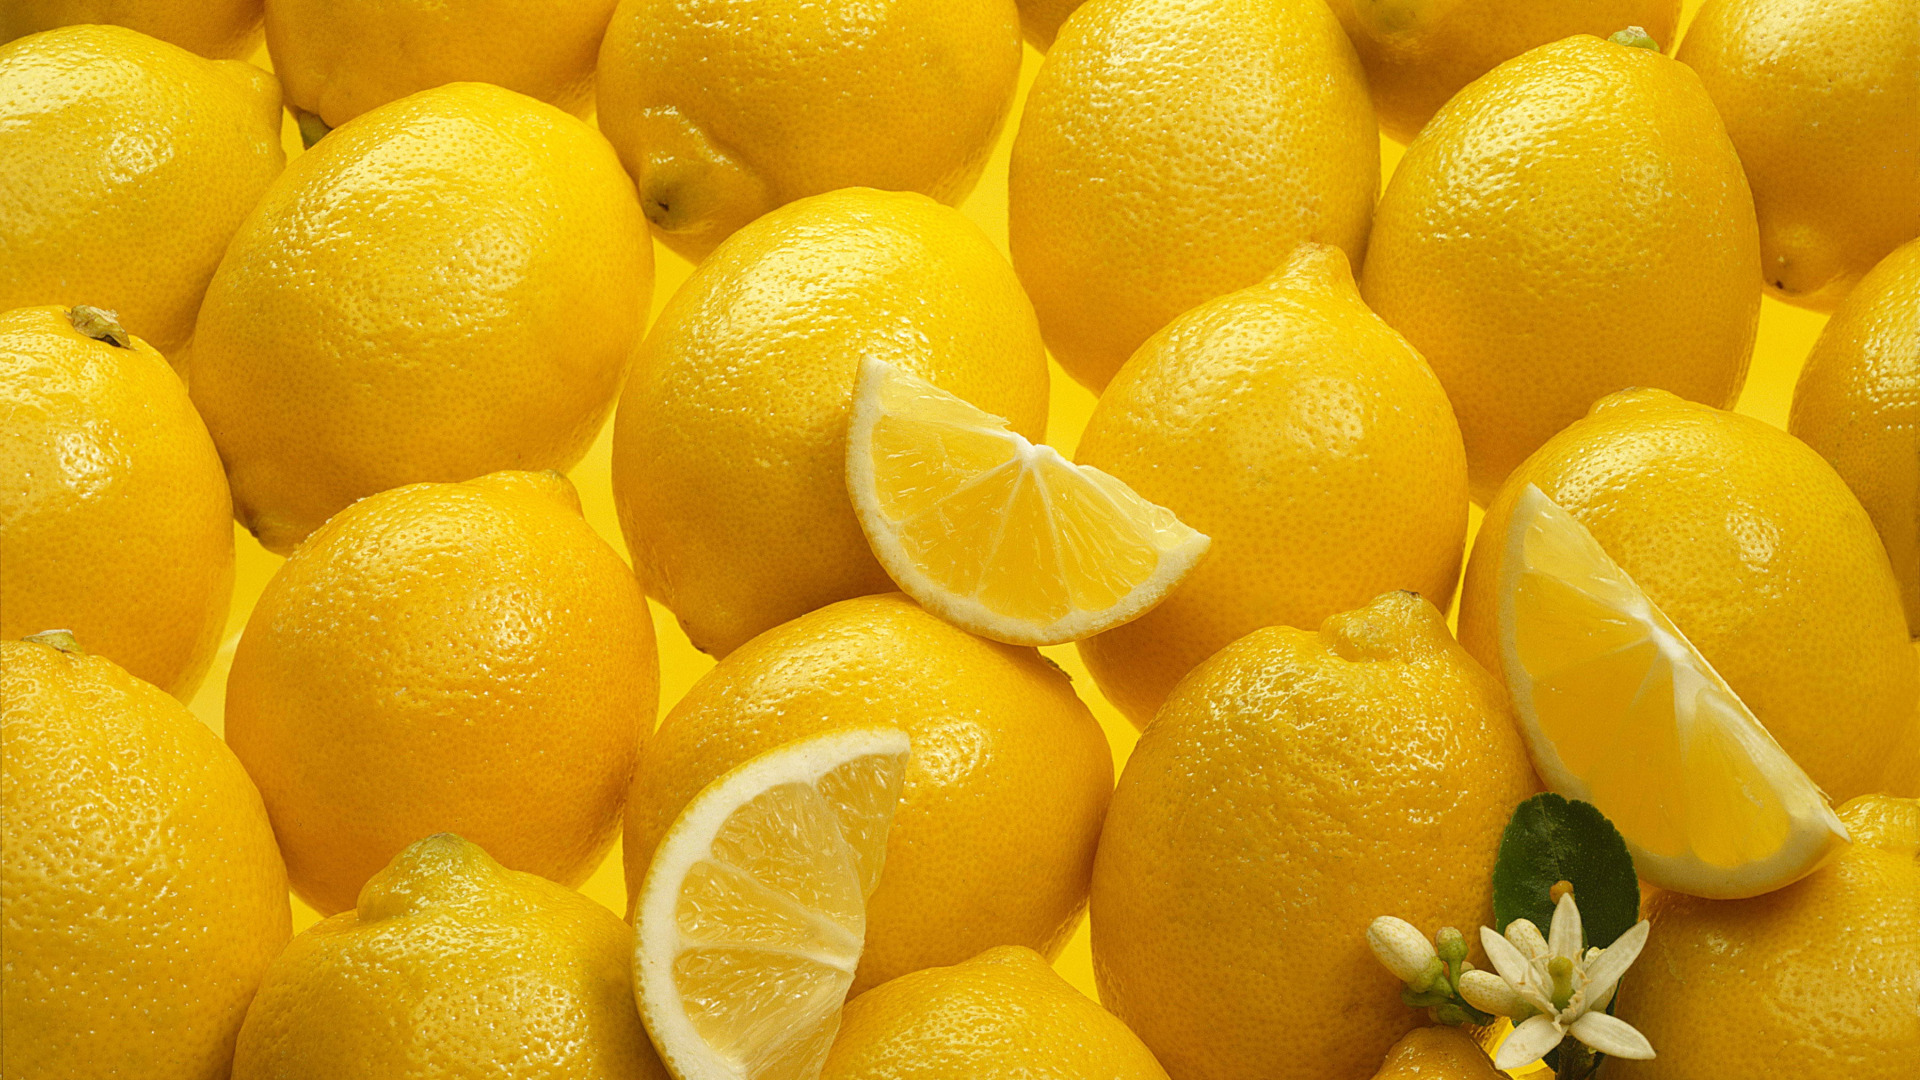 تصویر لیمو های تازه و سرشار از ویتامین در کیفیت HD برای چاپ پوستر 